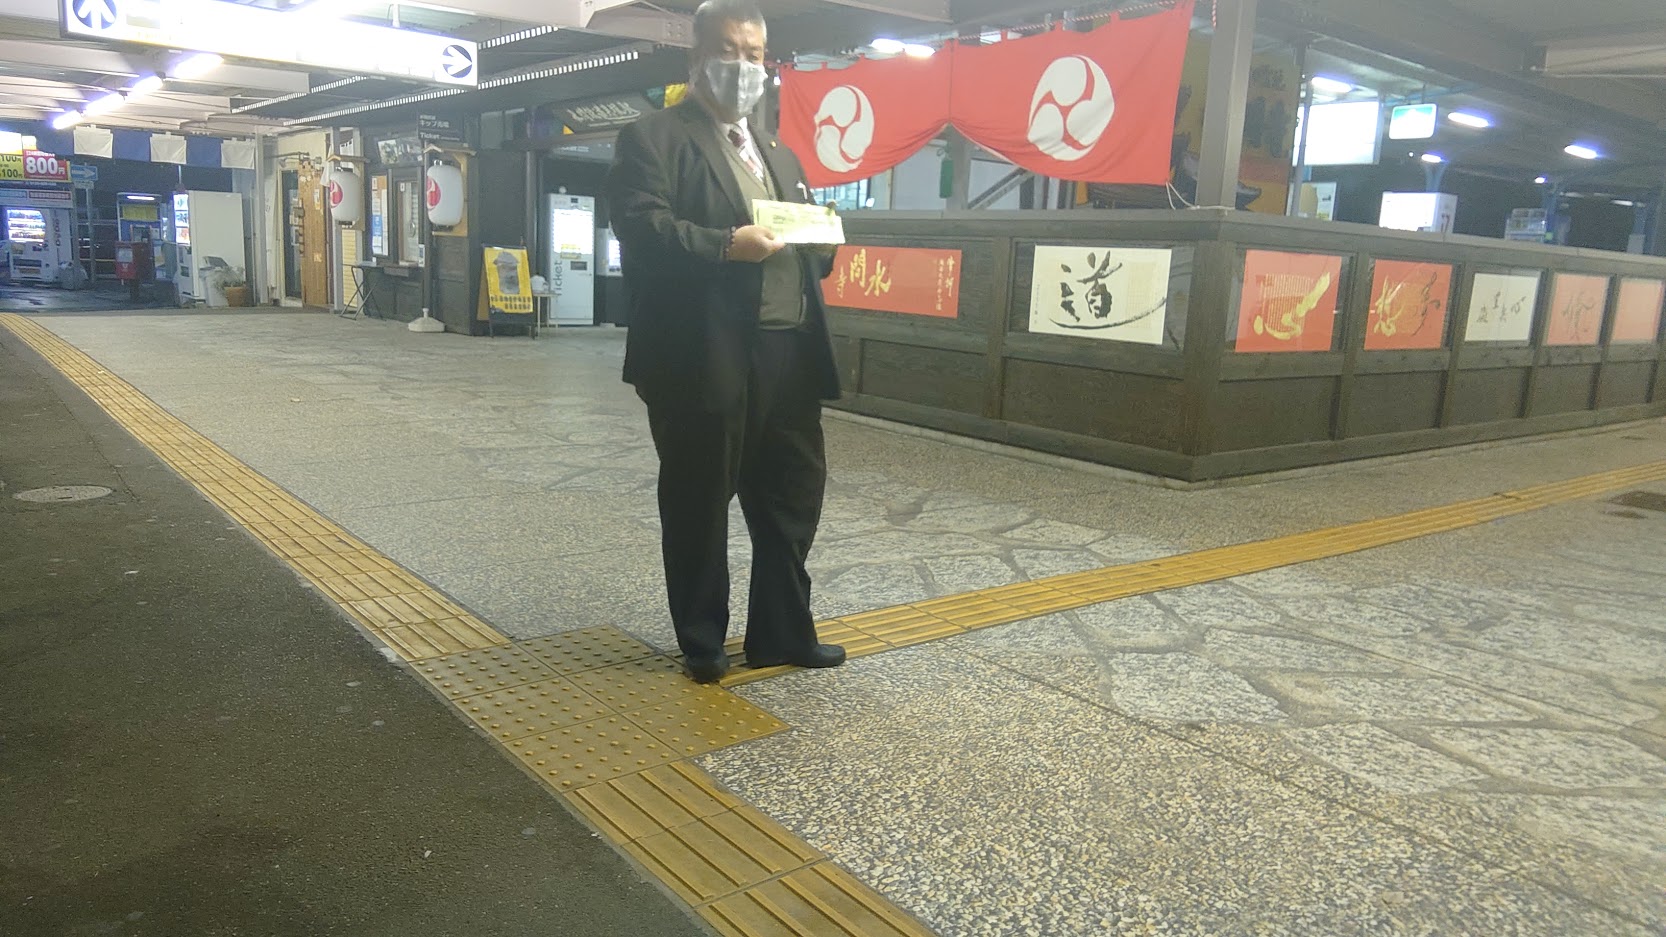 2021.3.2　南海貝塚駅にて朝のご挨拶を再開させる